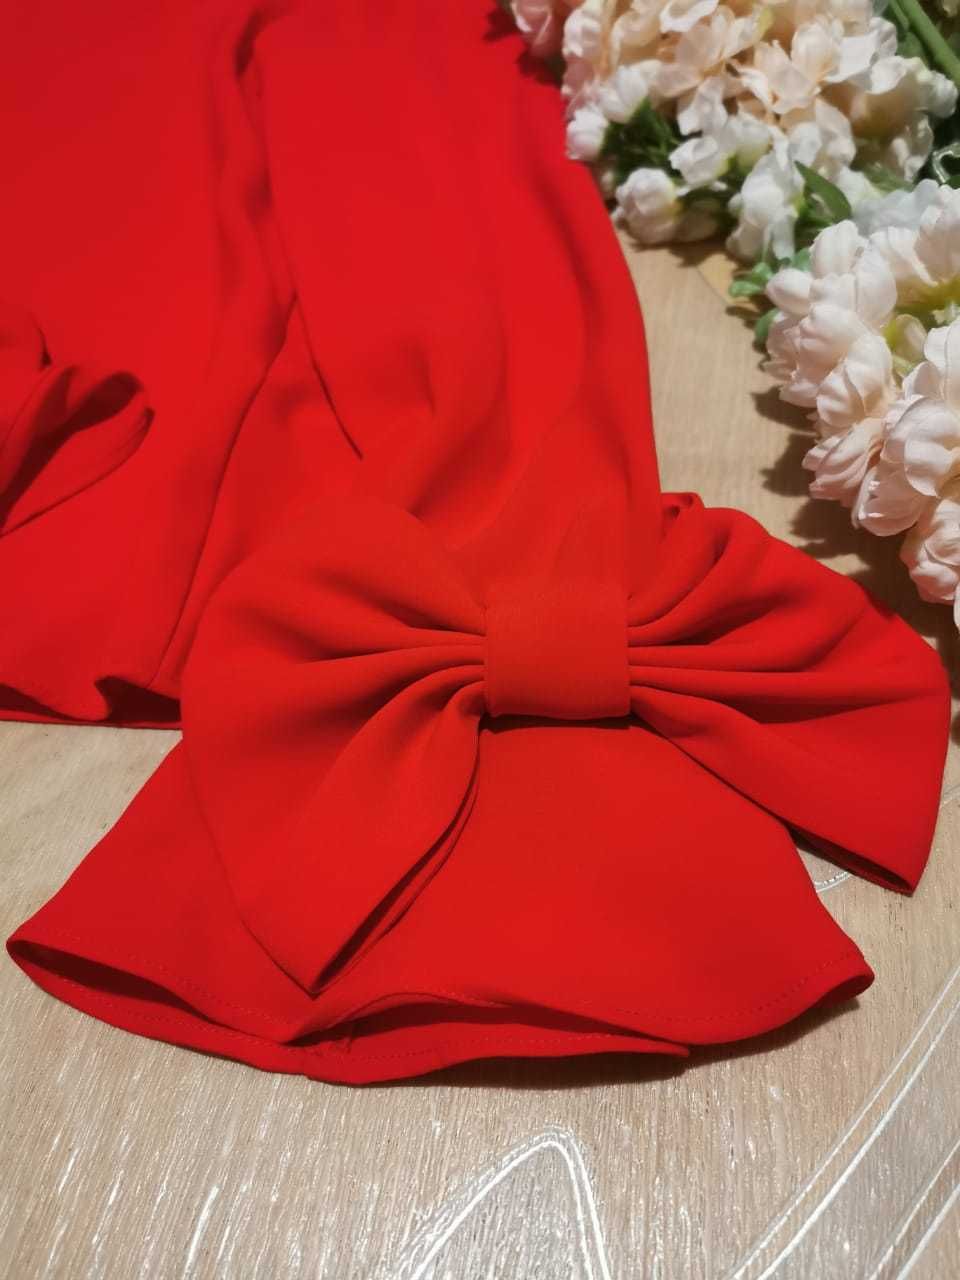 Красивая нарядная женская красная блузка с бантиками на рукавах